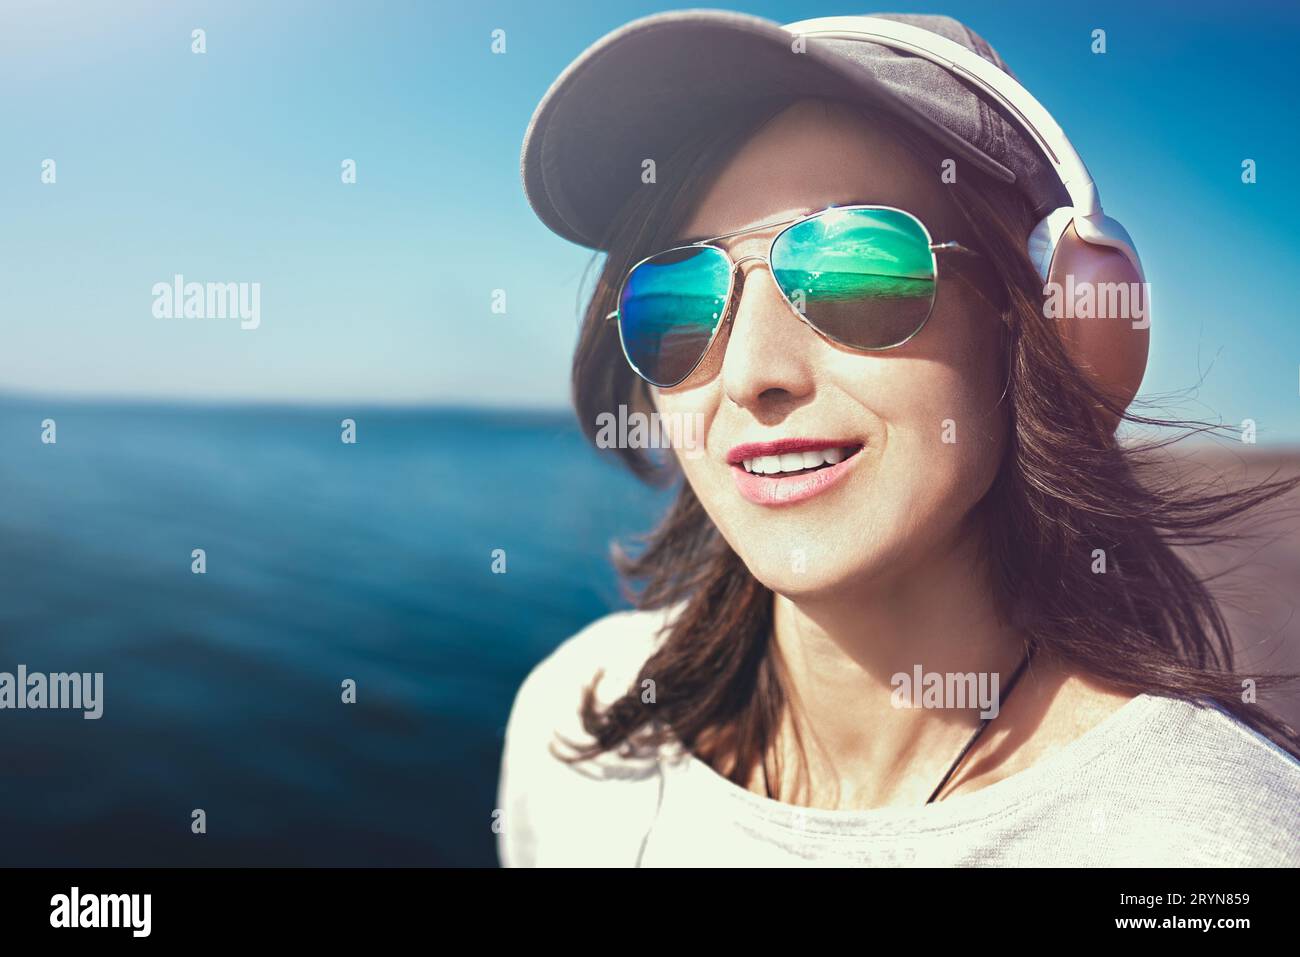 Ritratto ravvicinato di una donna con occhiali da sole che indossa un berretto che ama la musica sullo sfondo del mare. Concetto di musica. Foto Stock